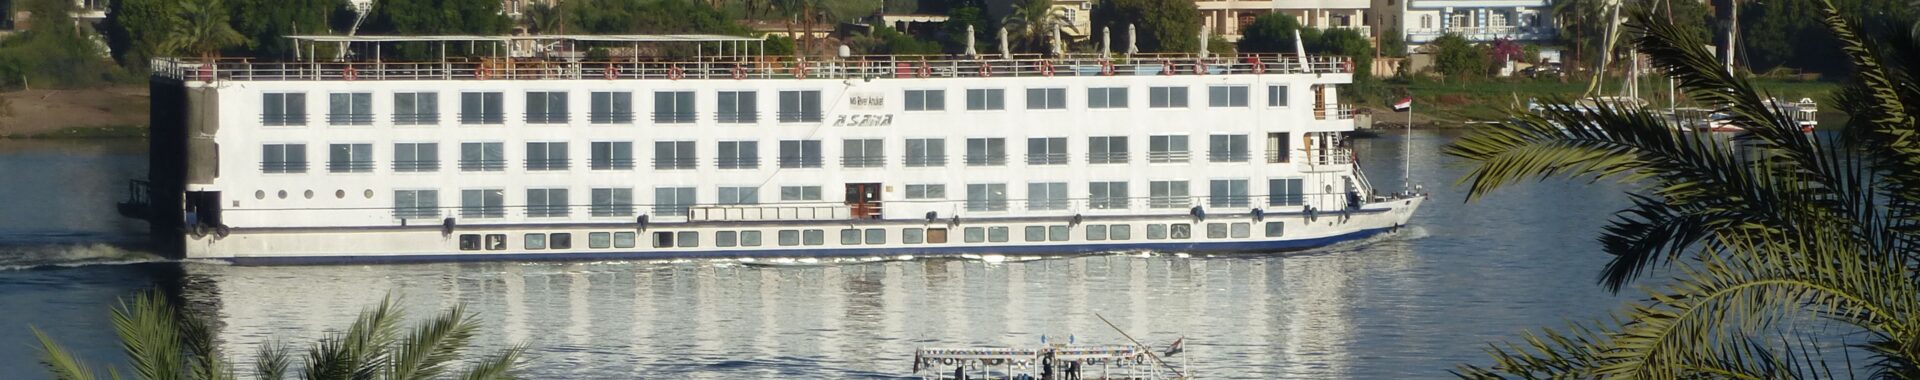 Nijlcruiseboot in Egypte